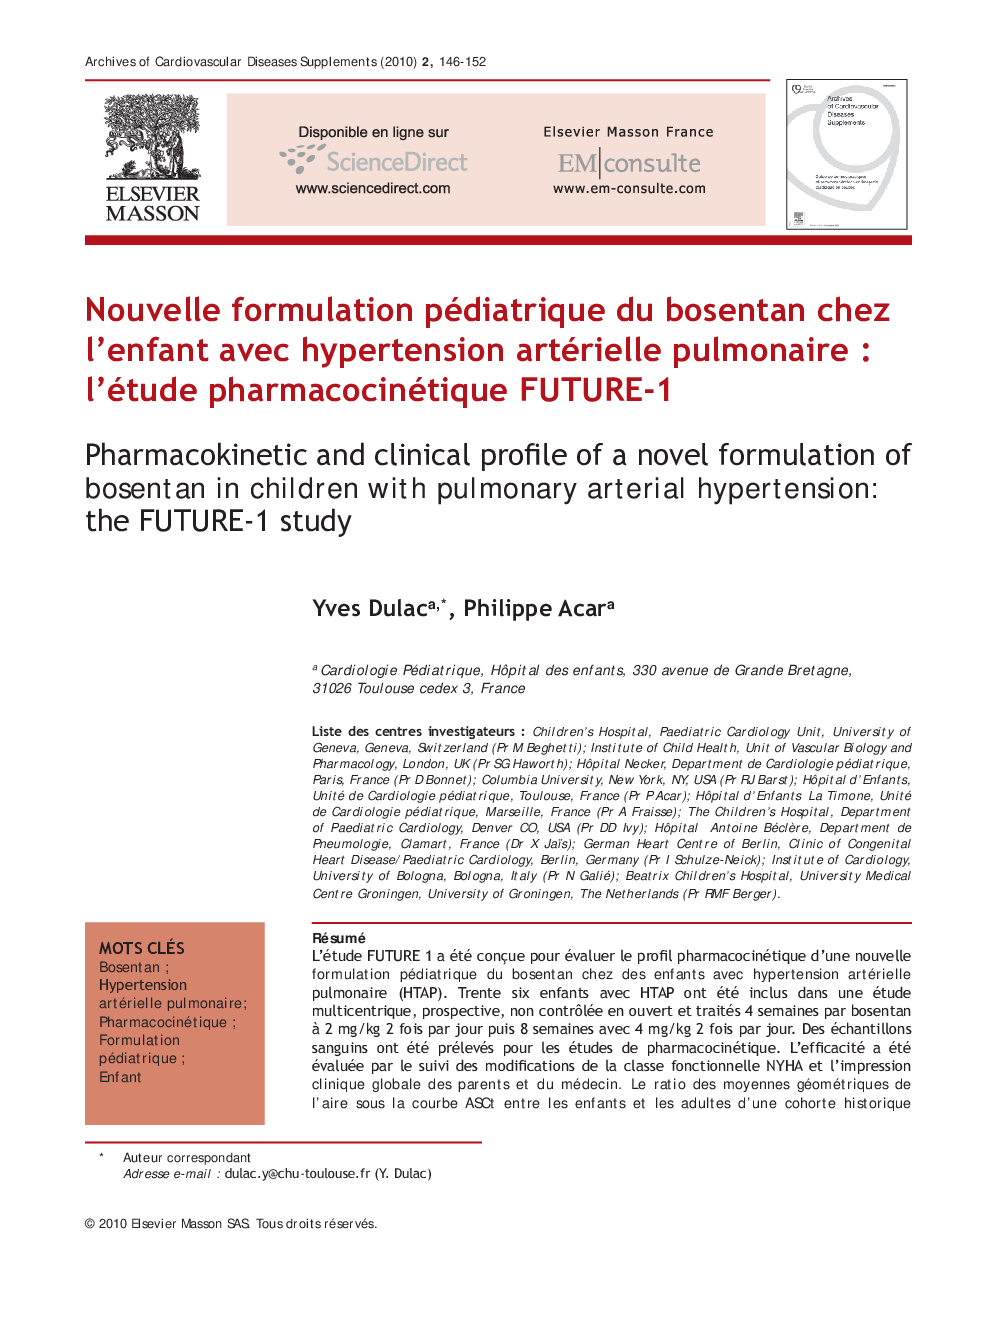 Nouvelle formulation pédiatrique du bosentan chez l’enfant avec hypertension artérielle pulmonaire : l’étude pharmacocinétique FUTURE-1